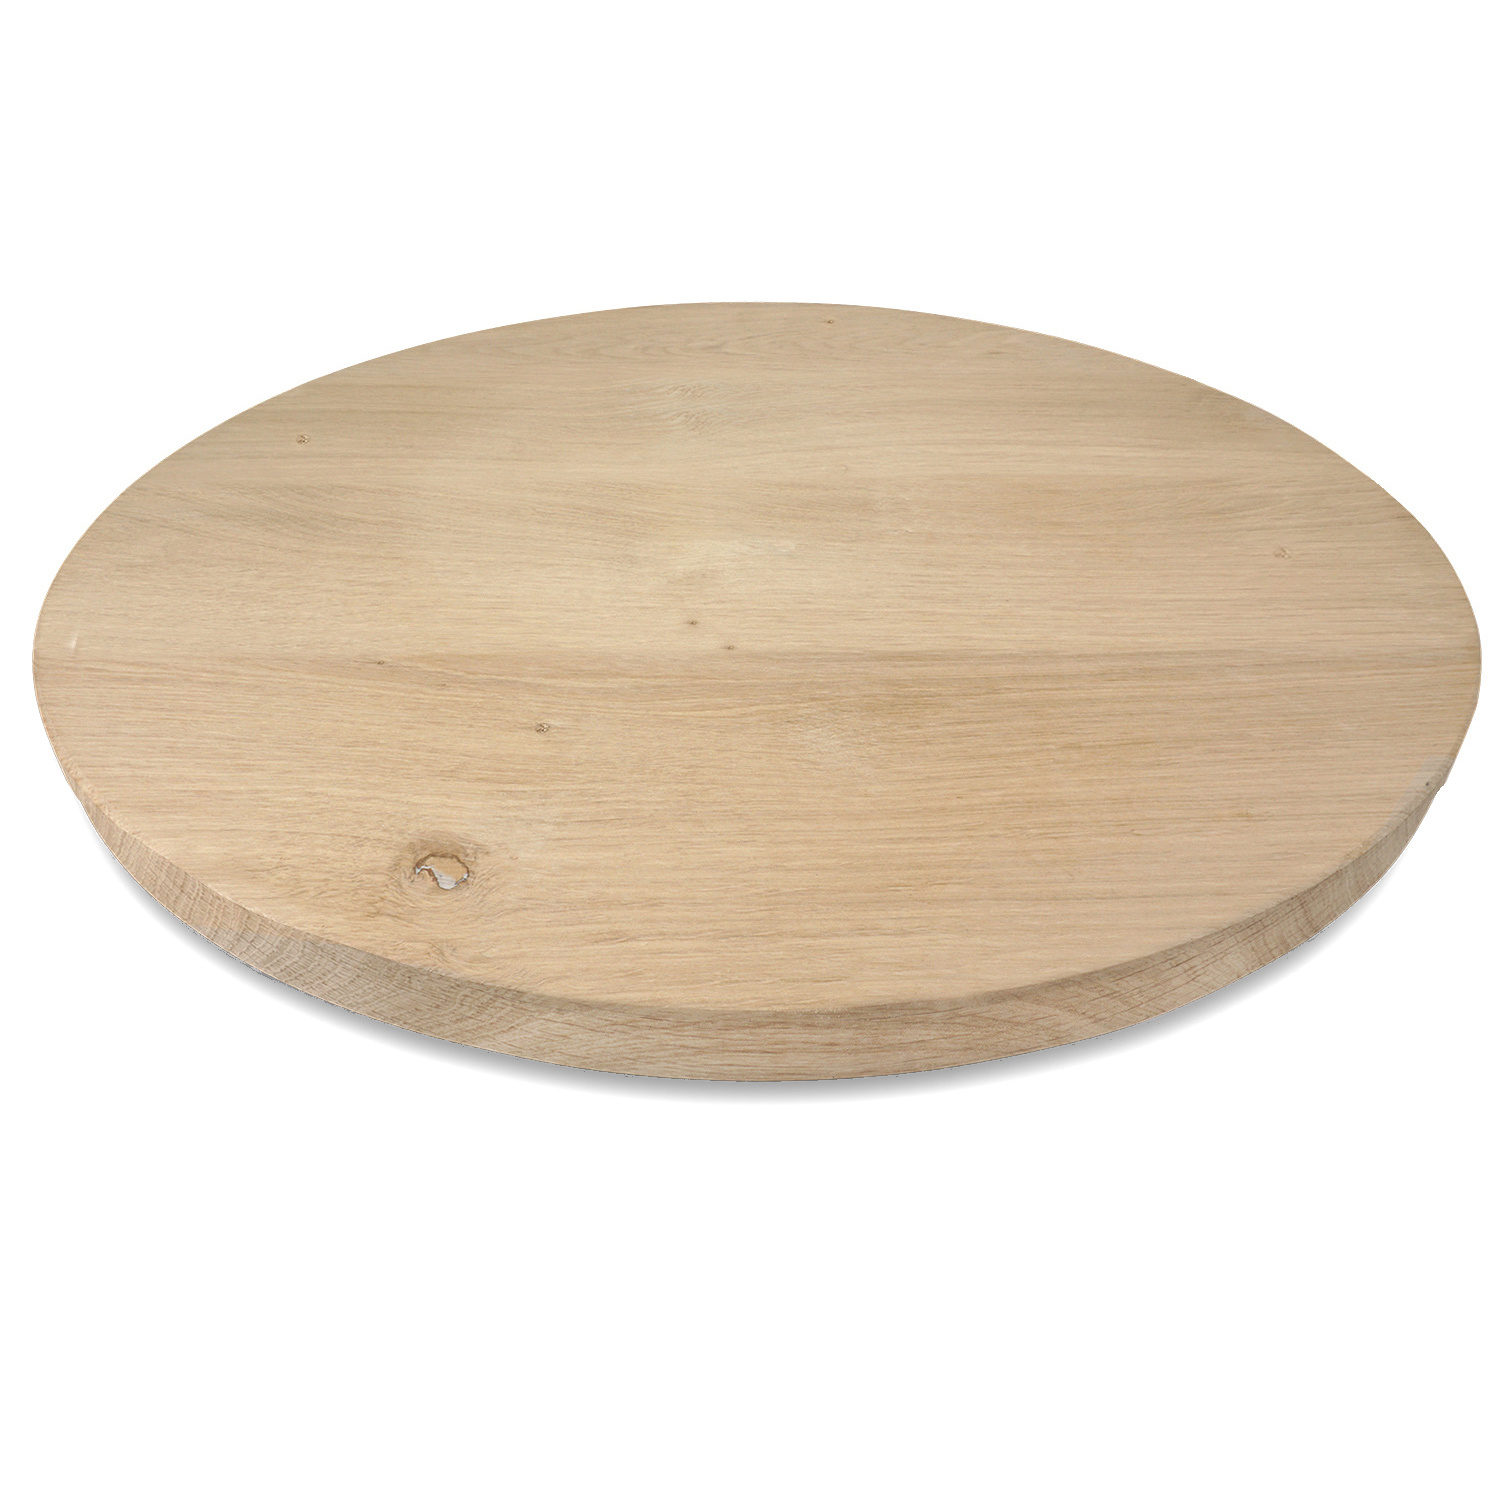  Rond eiken tafelblad op maat - 2,7 cm dik (1-laag) - rustiek Europees eikenhout - met brede lamellen (circa 10-12 cm) - verlijmd kd 8-12% - diameter van 35 tot 117 cm